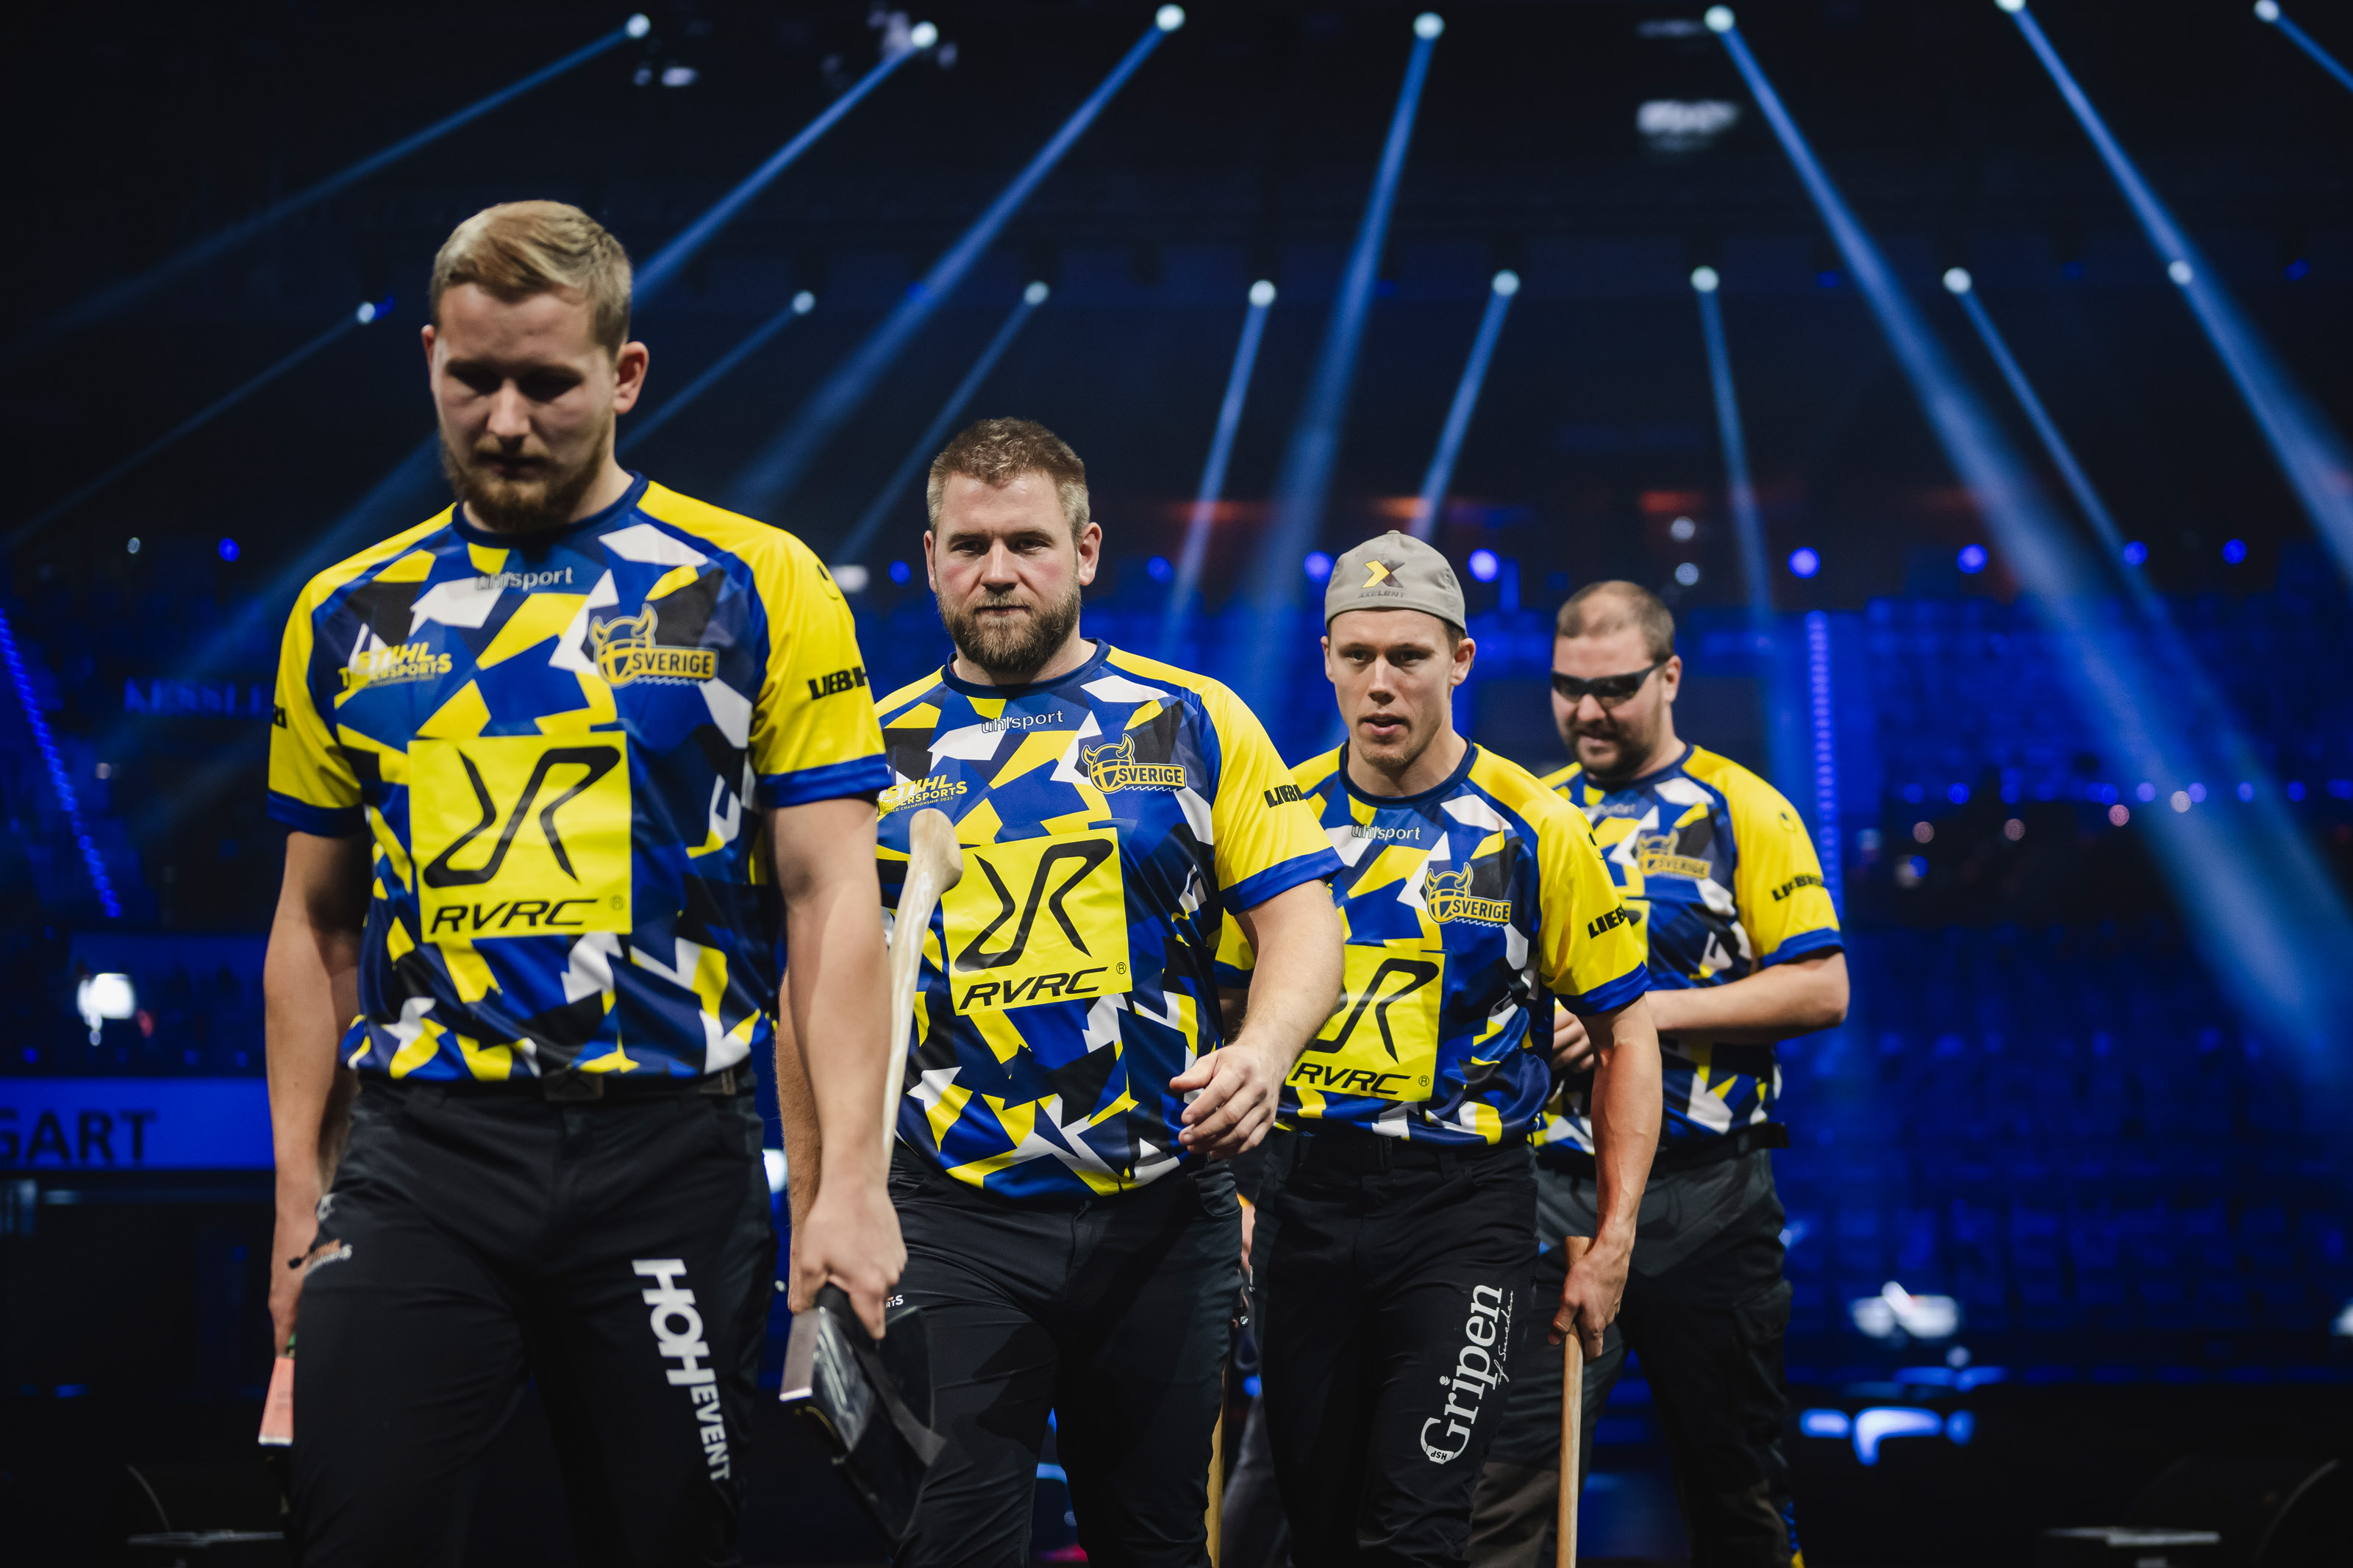 Sverige föll snöpligt när lag-VM i TIMBERSPORTS® avgjordes under fredagskvällen.